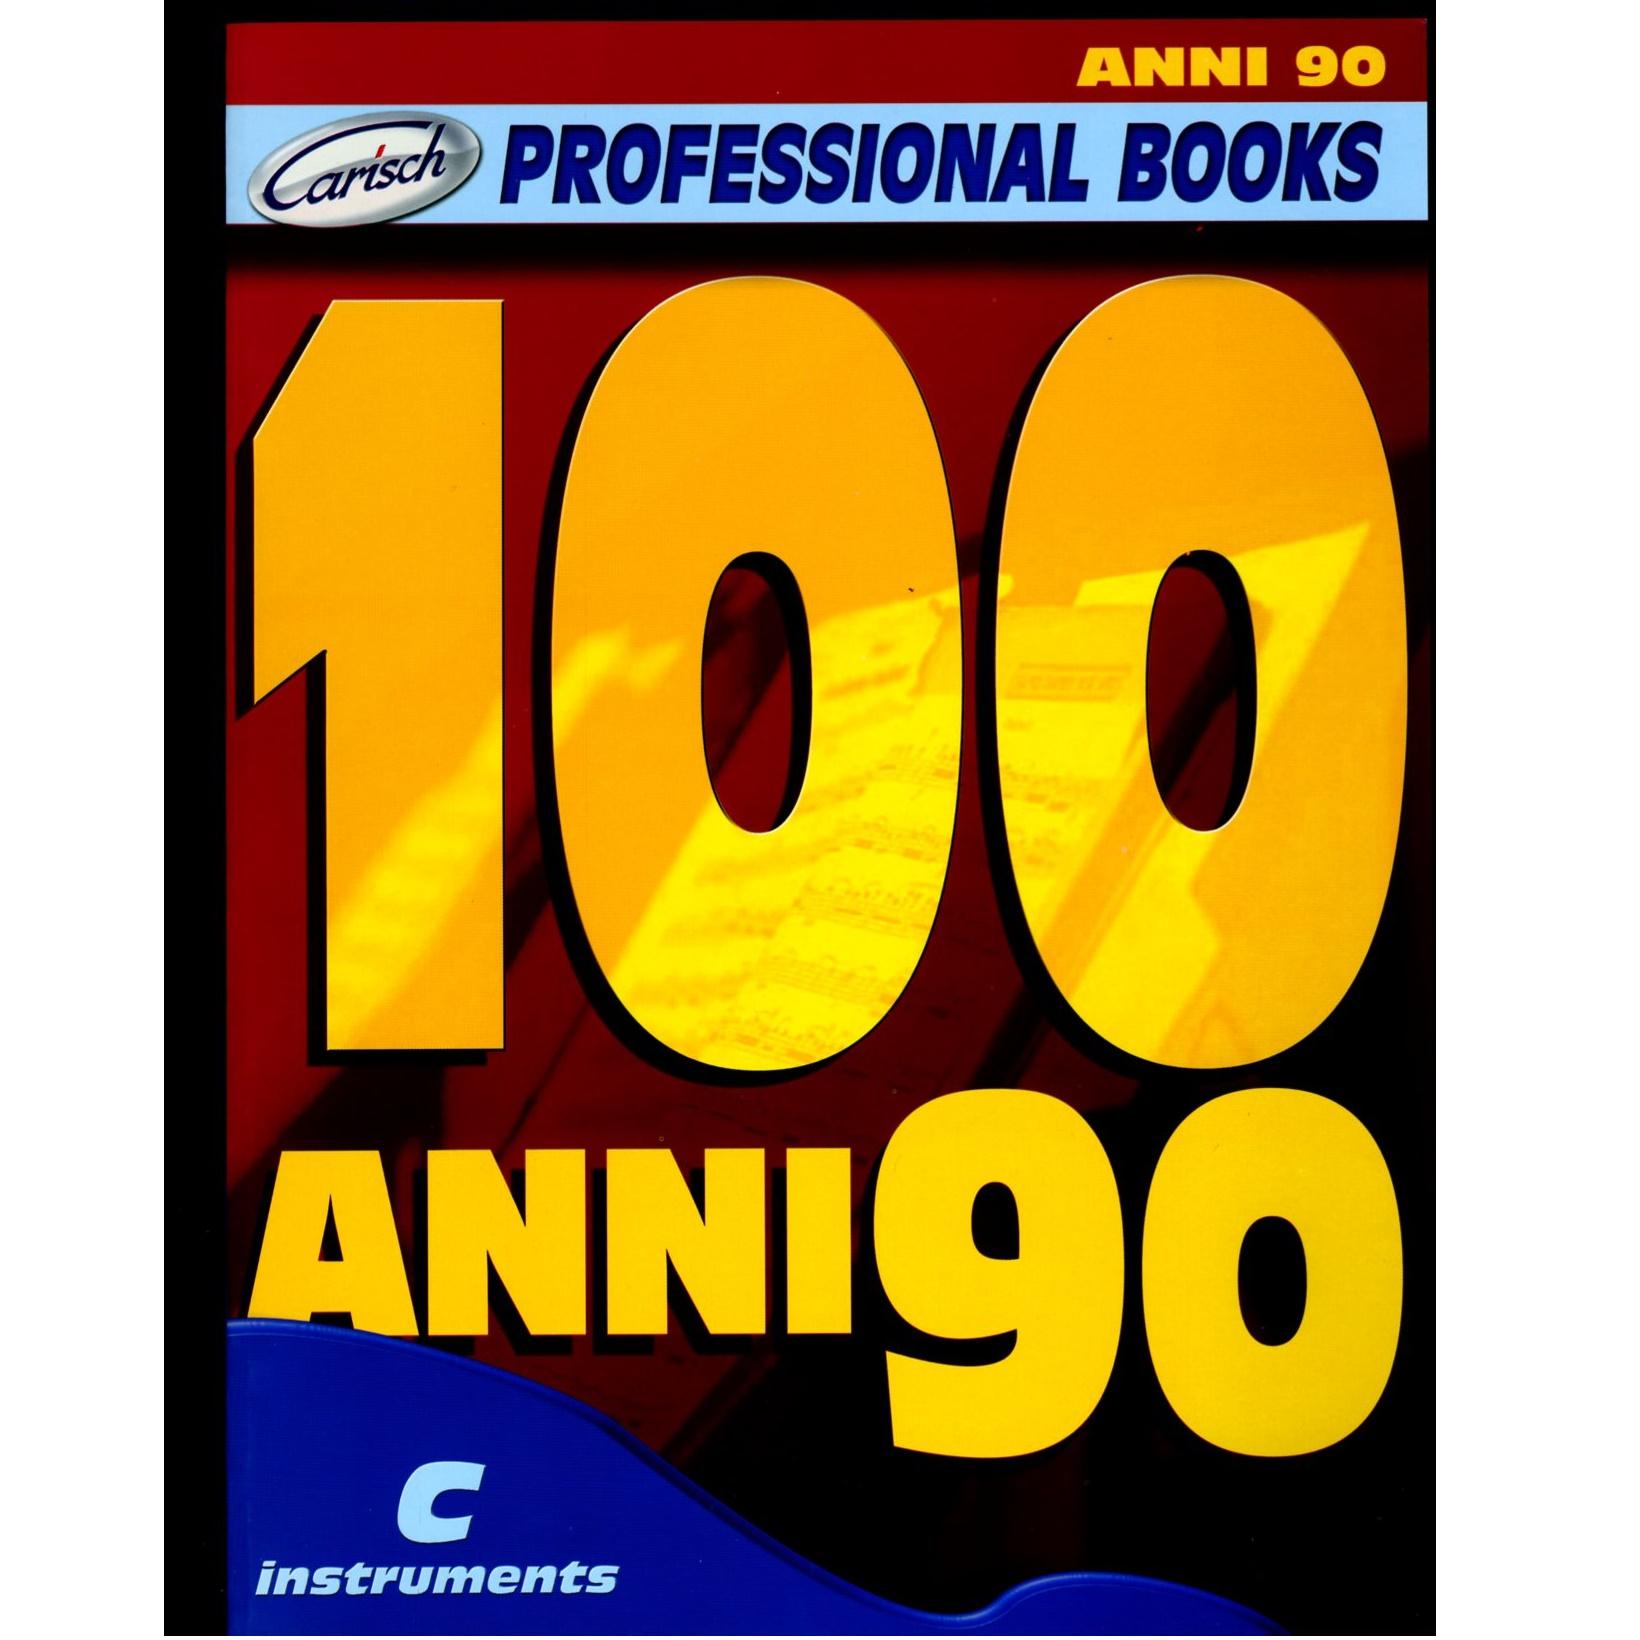 Professional Books 100 Anni 90 - Carisch